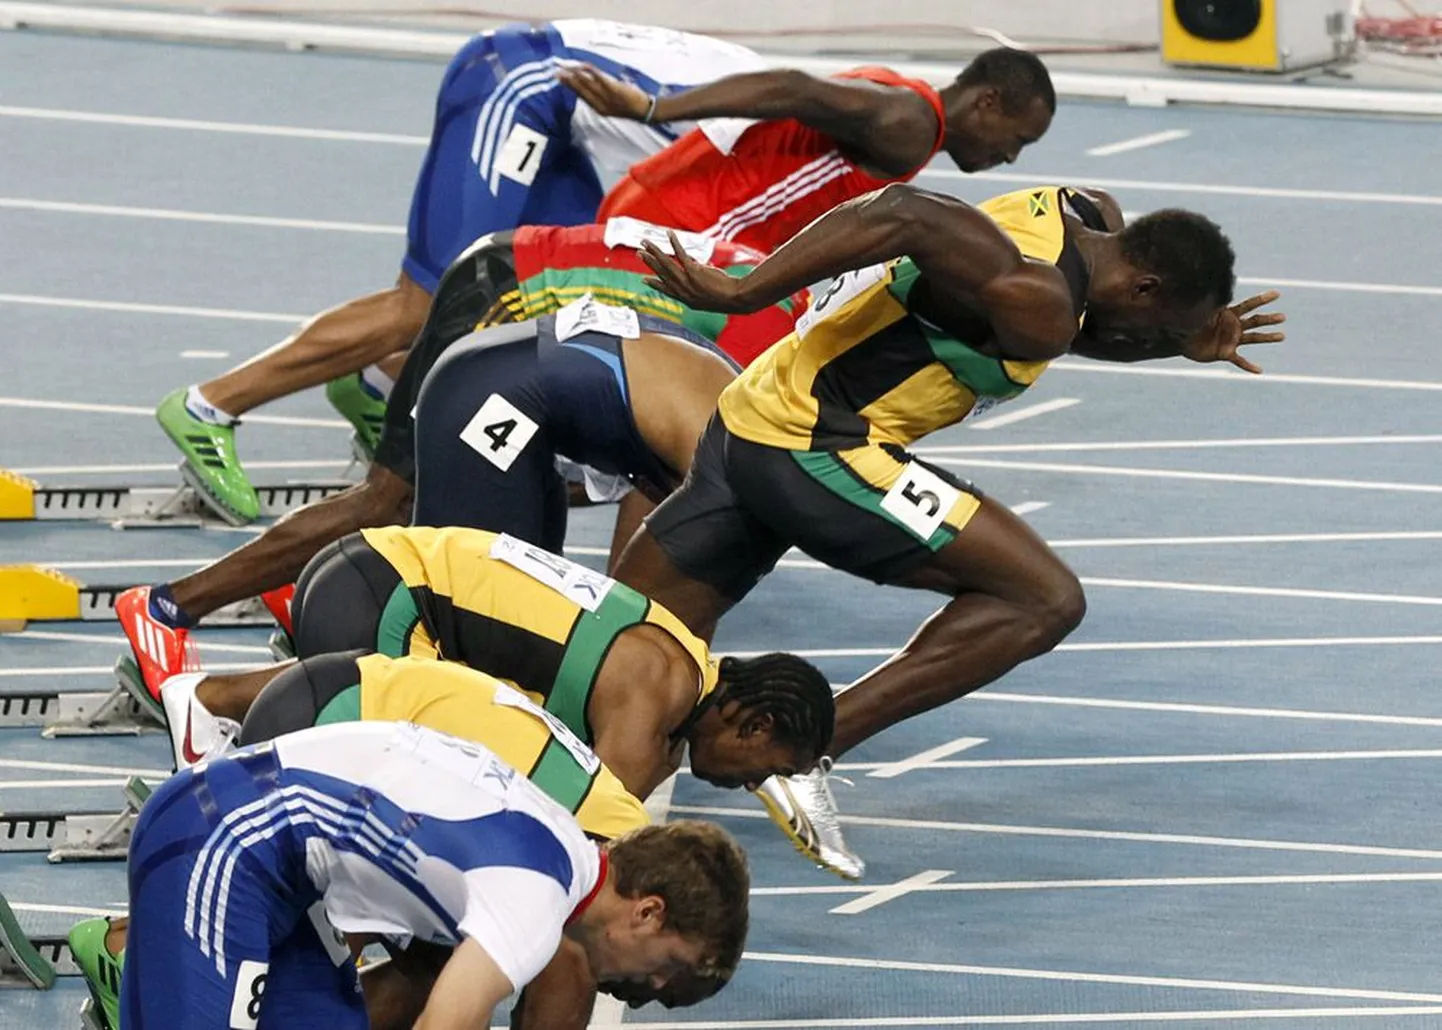 Pilt räägib enda eest – Usain Bolt hakkas liiga vara jooksma, tulemuseks diskvalifitseerimine.